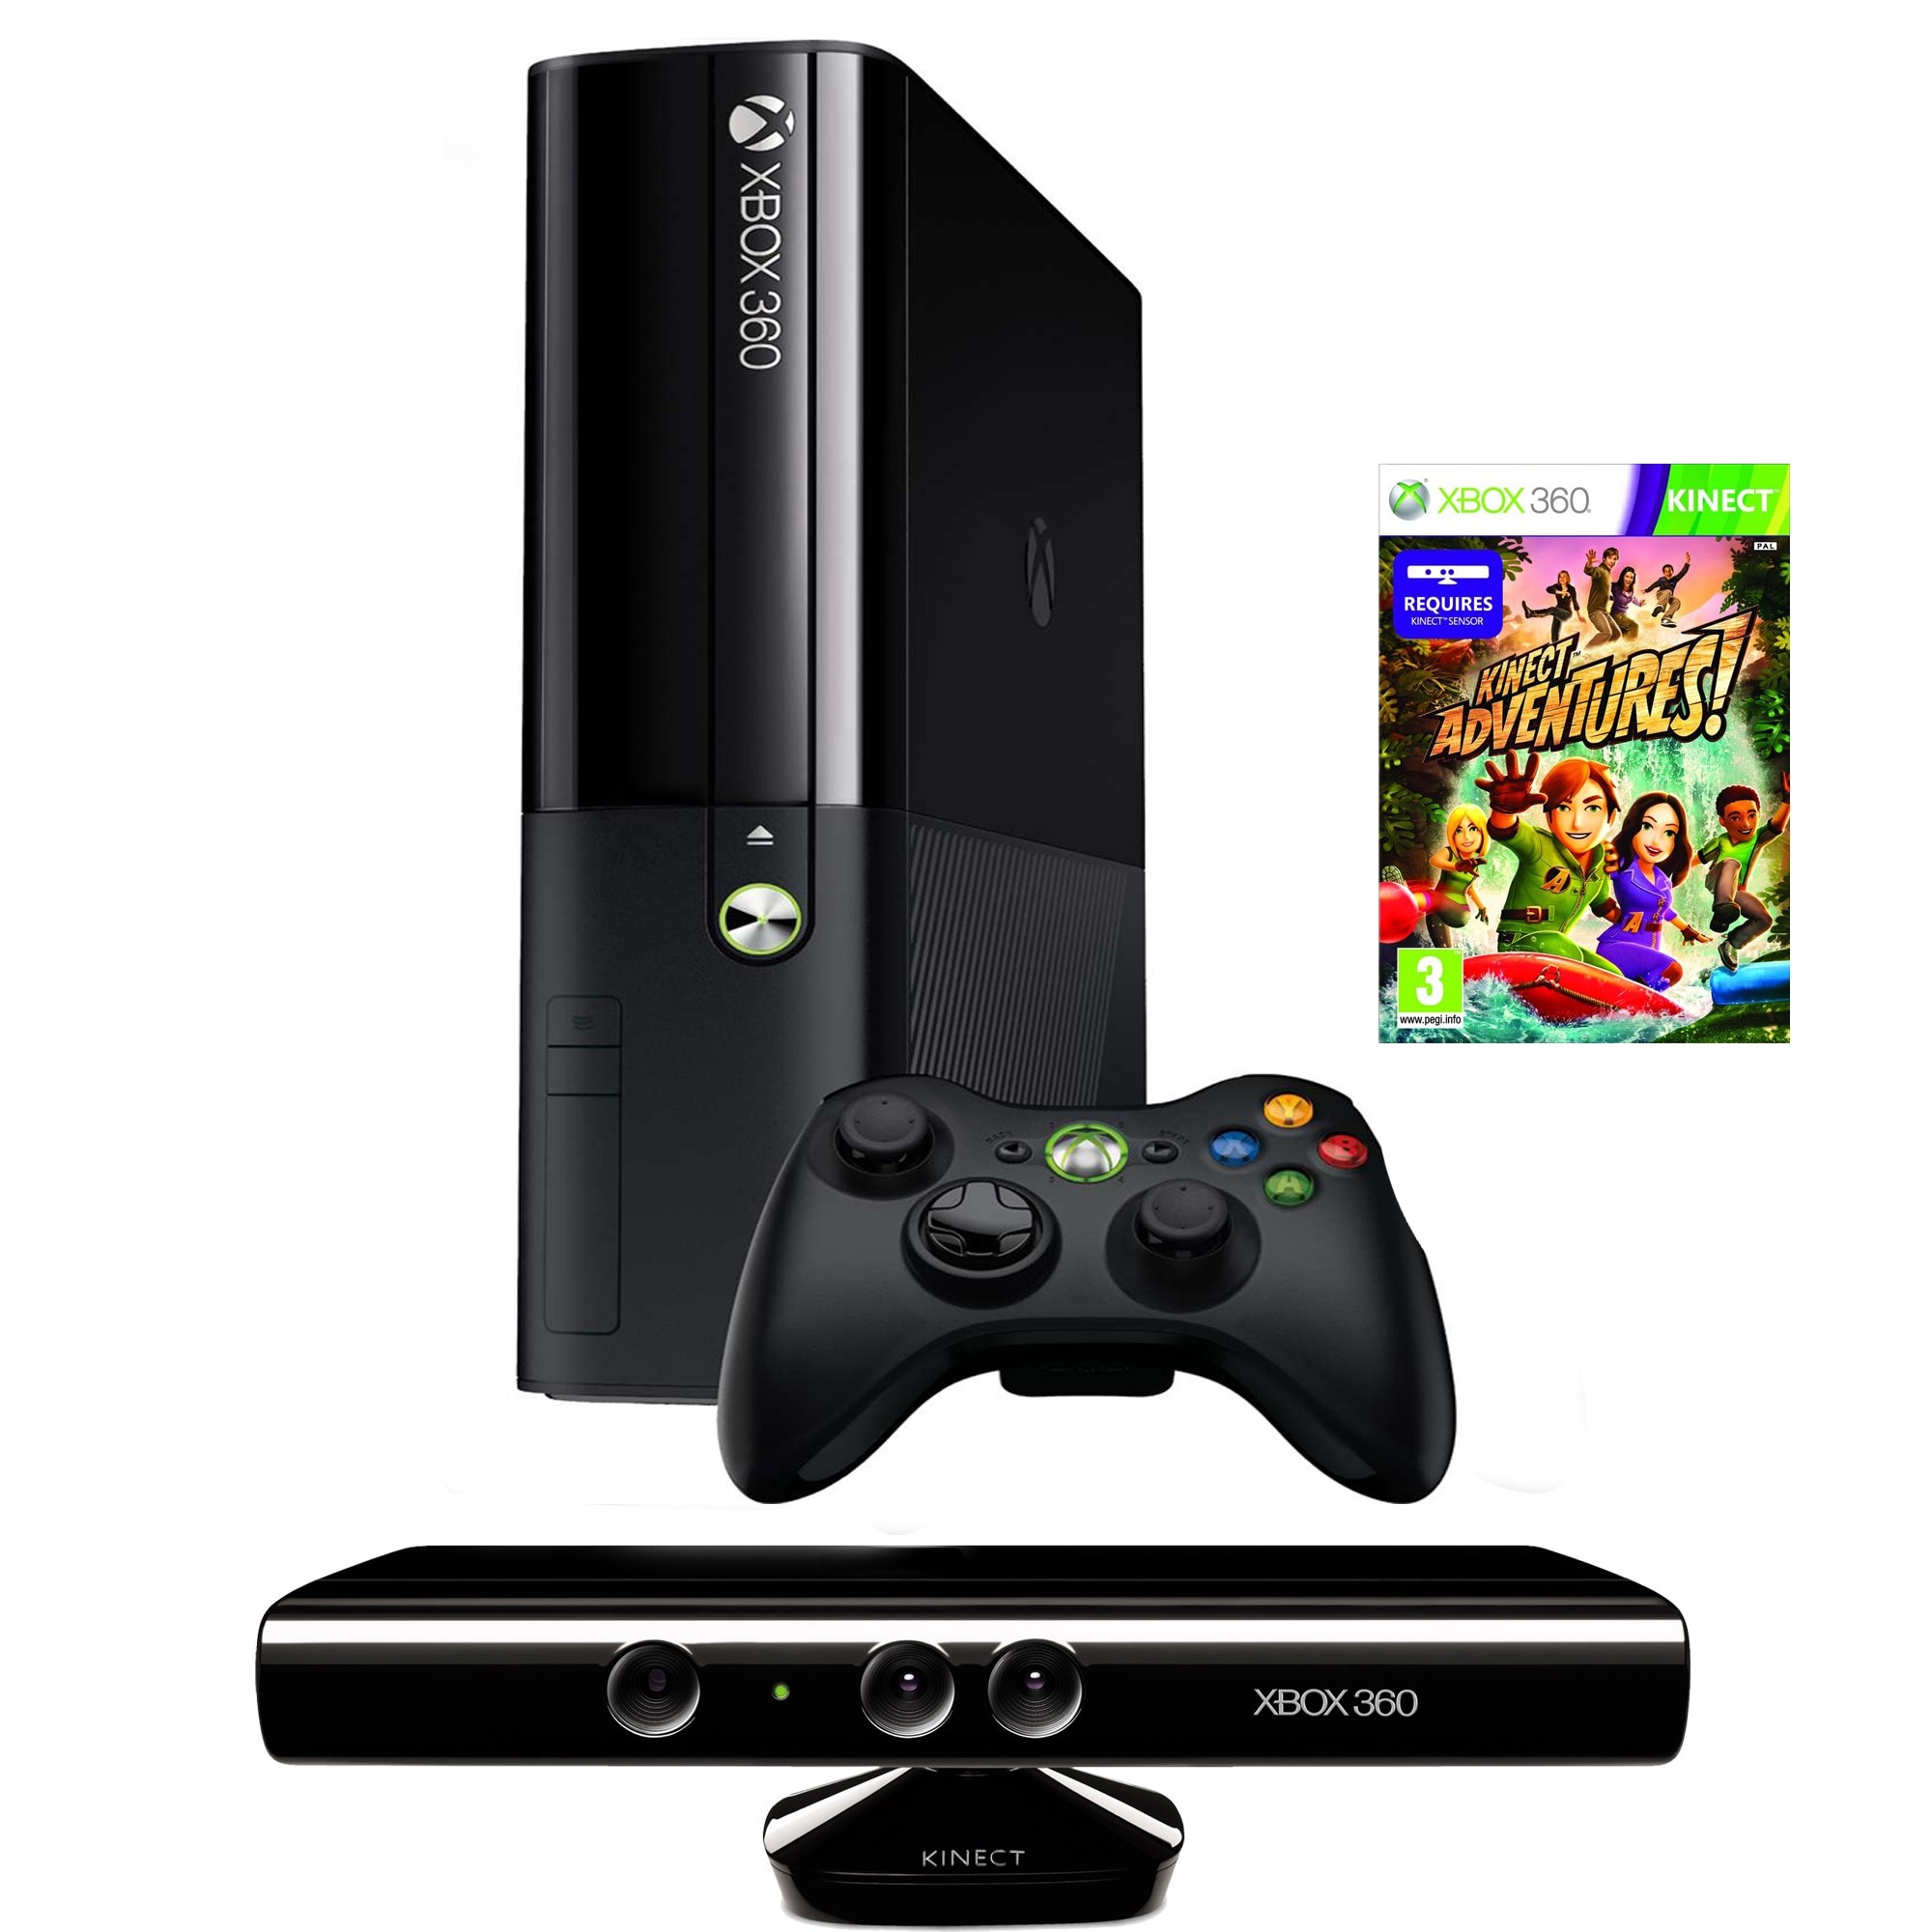 Приставка хбокс 360. Хбокс 360. Игровая приставка Xbox 360. Иксбокс 360 фрибут. Xbox 360 250gb Kinect.